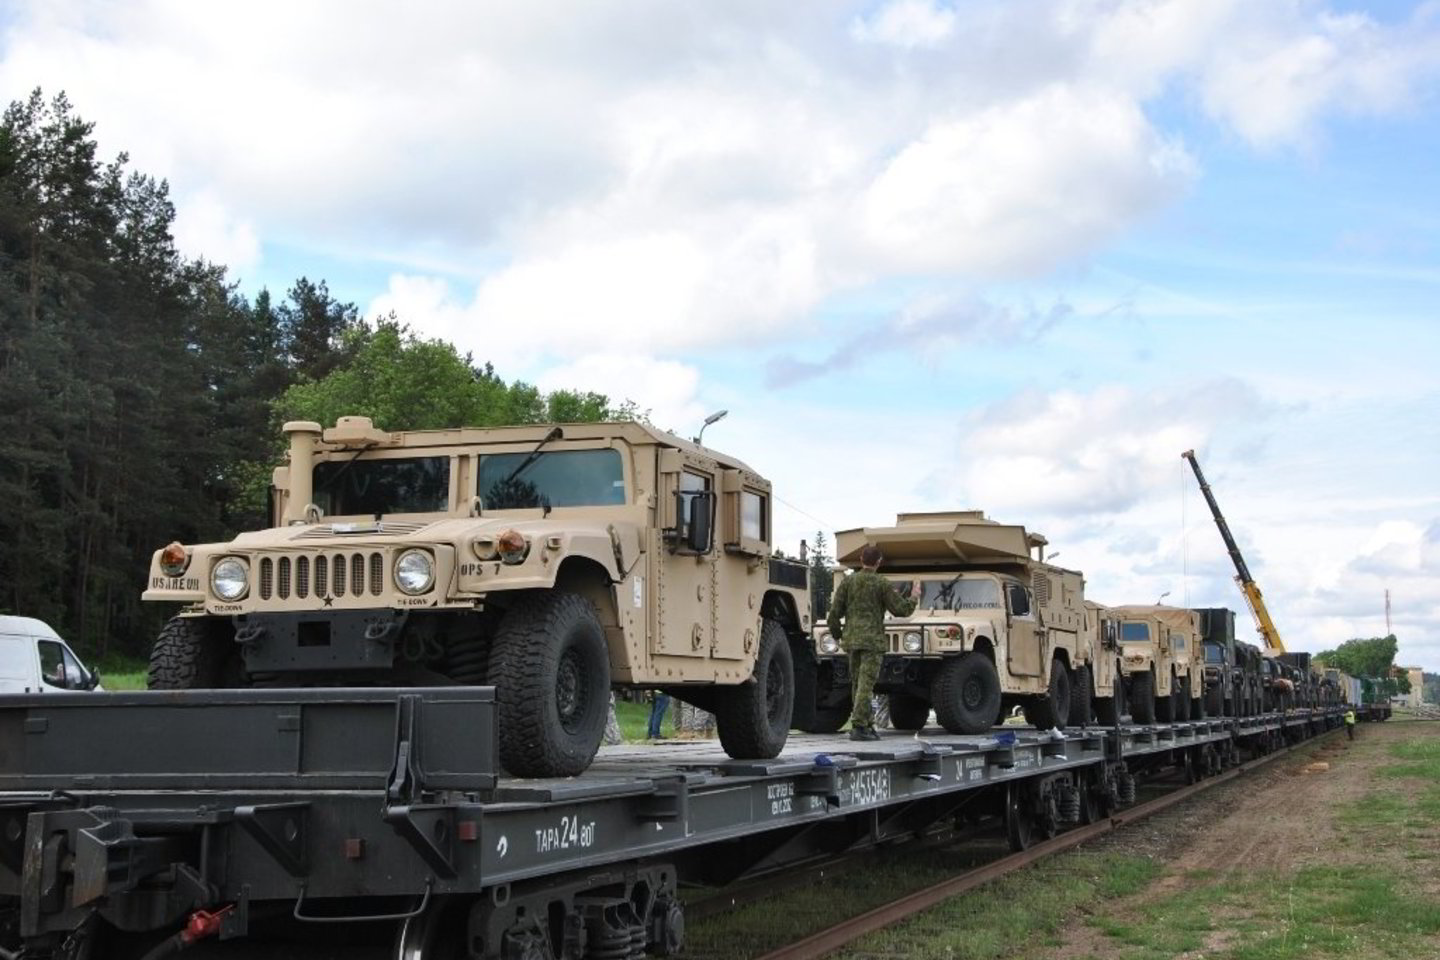 Amerikiečiai į Pabradę atgabeno karinę įrangą pratyboms Lietuvoje.<br>KAM